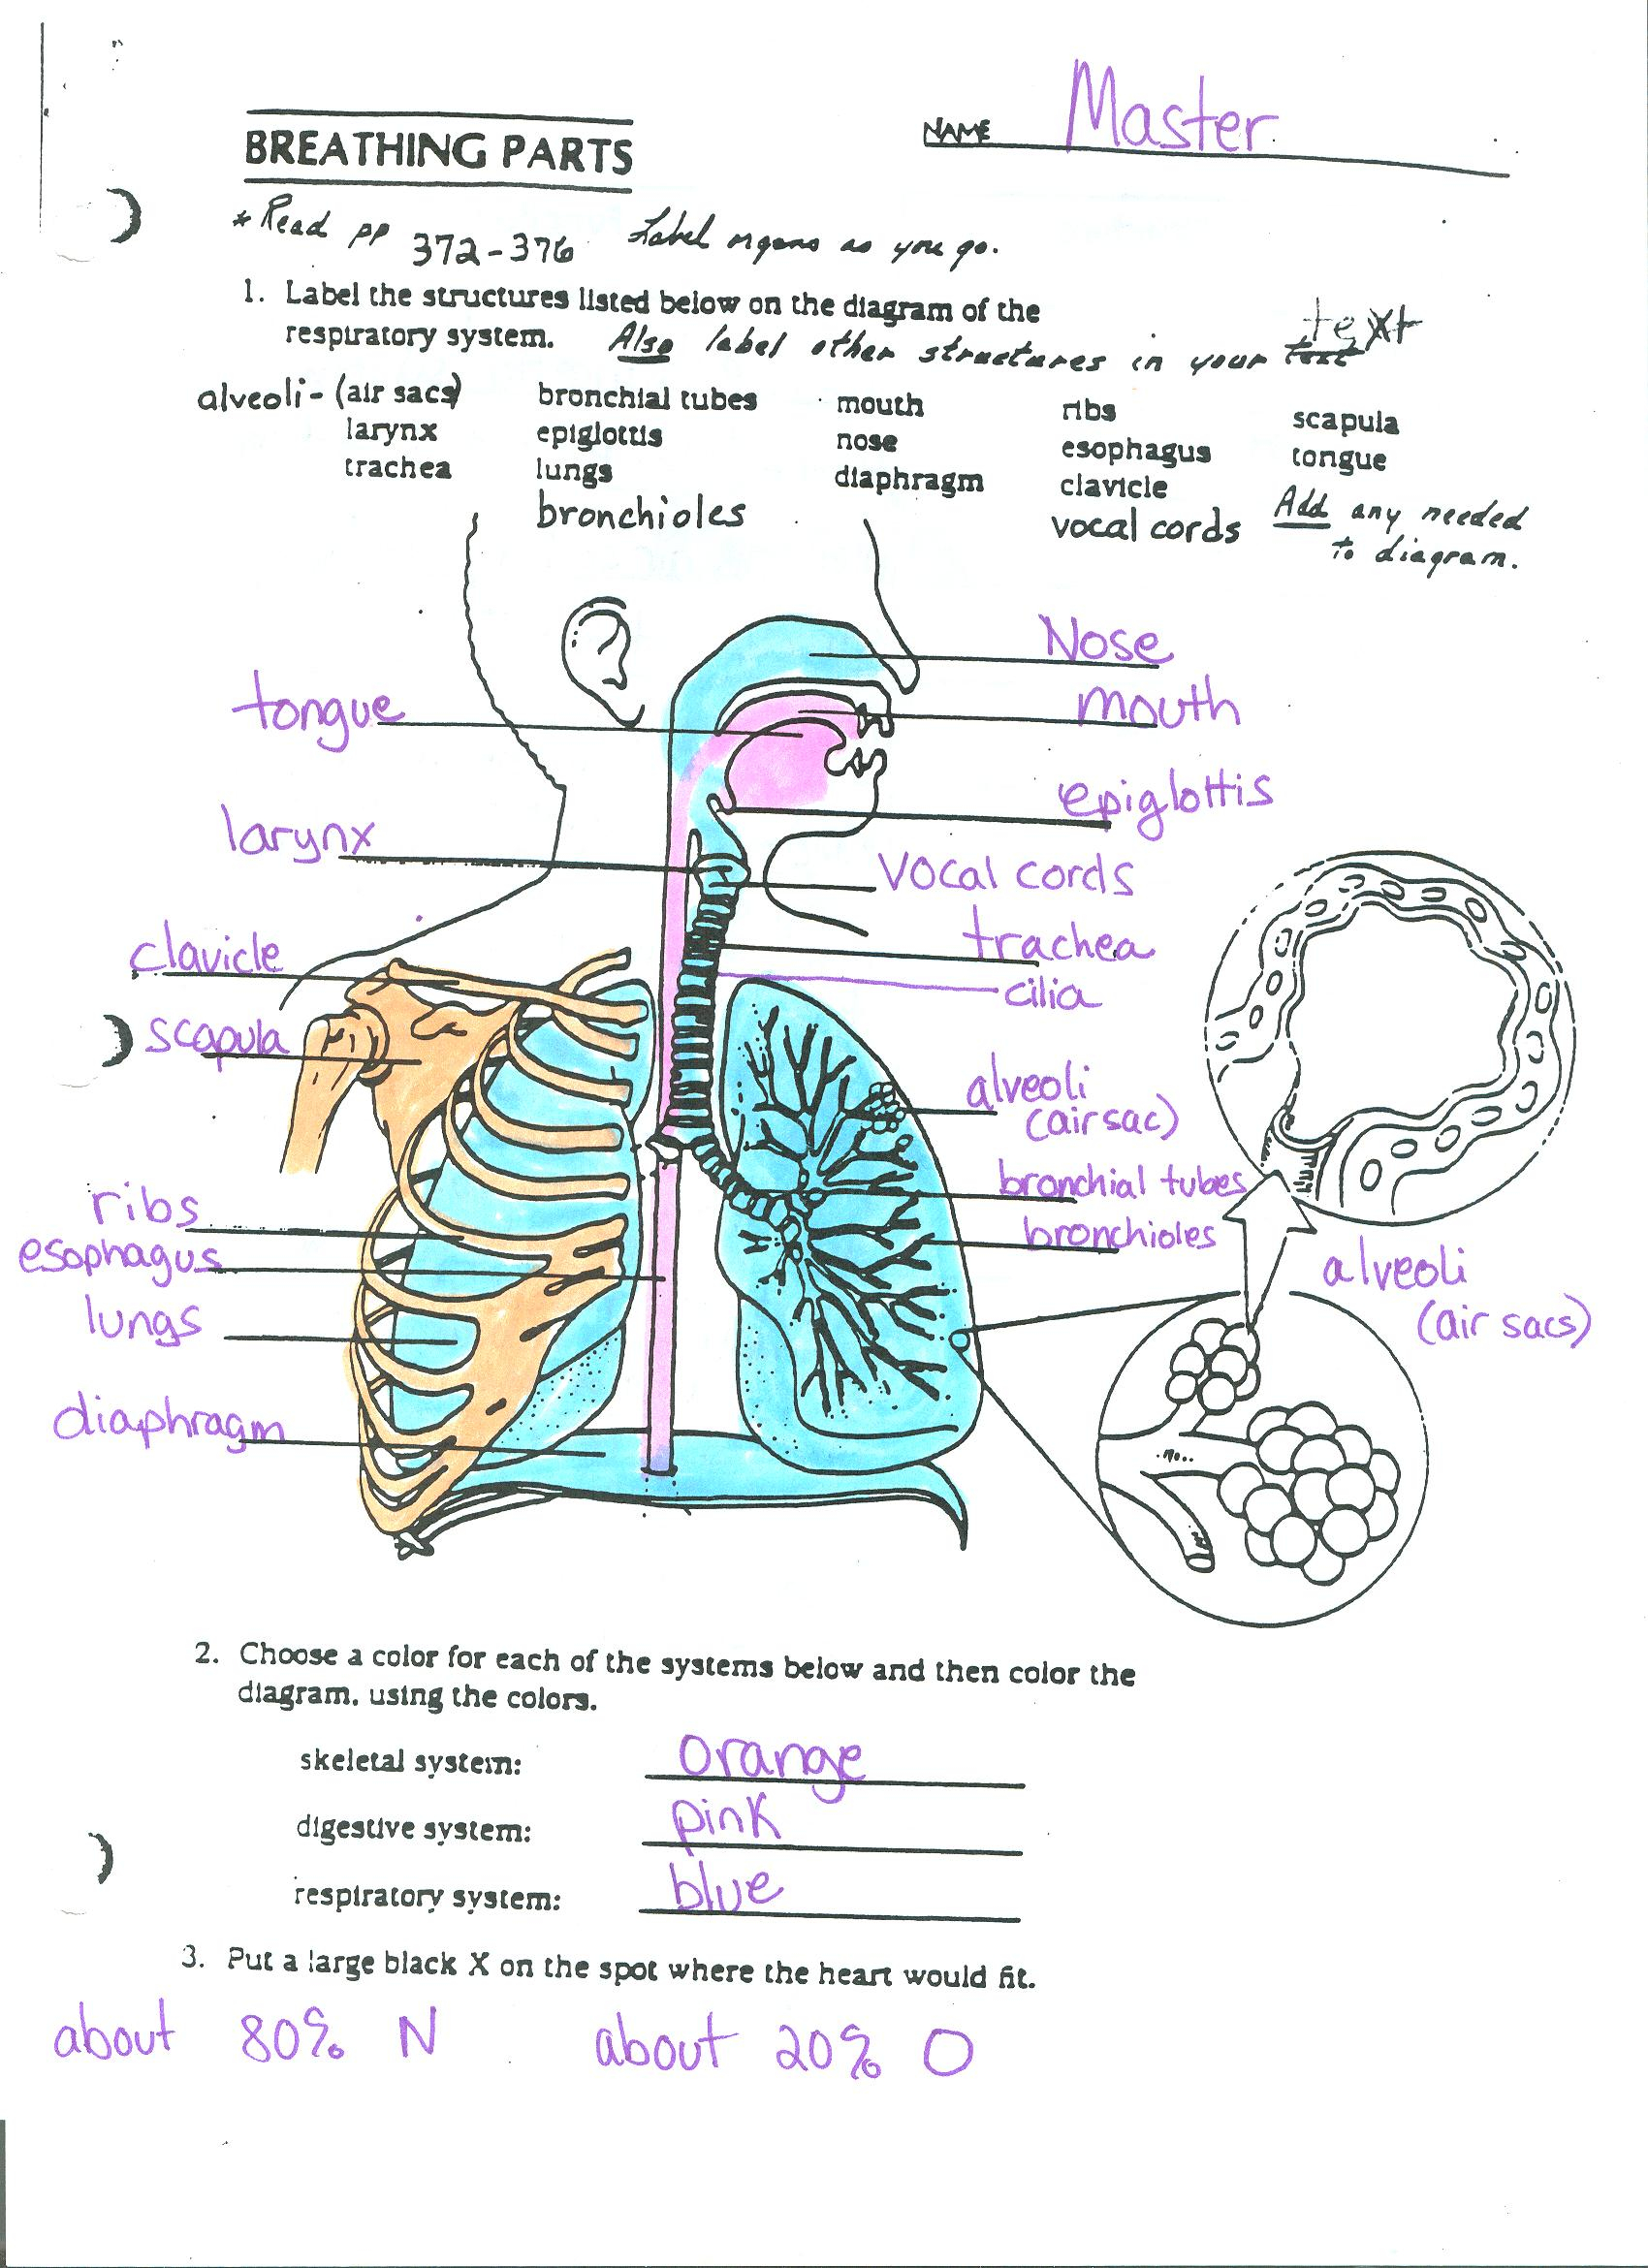 Respiratory System Diagram Respiratory System Diagram And Vocabulary Ms Crawley